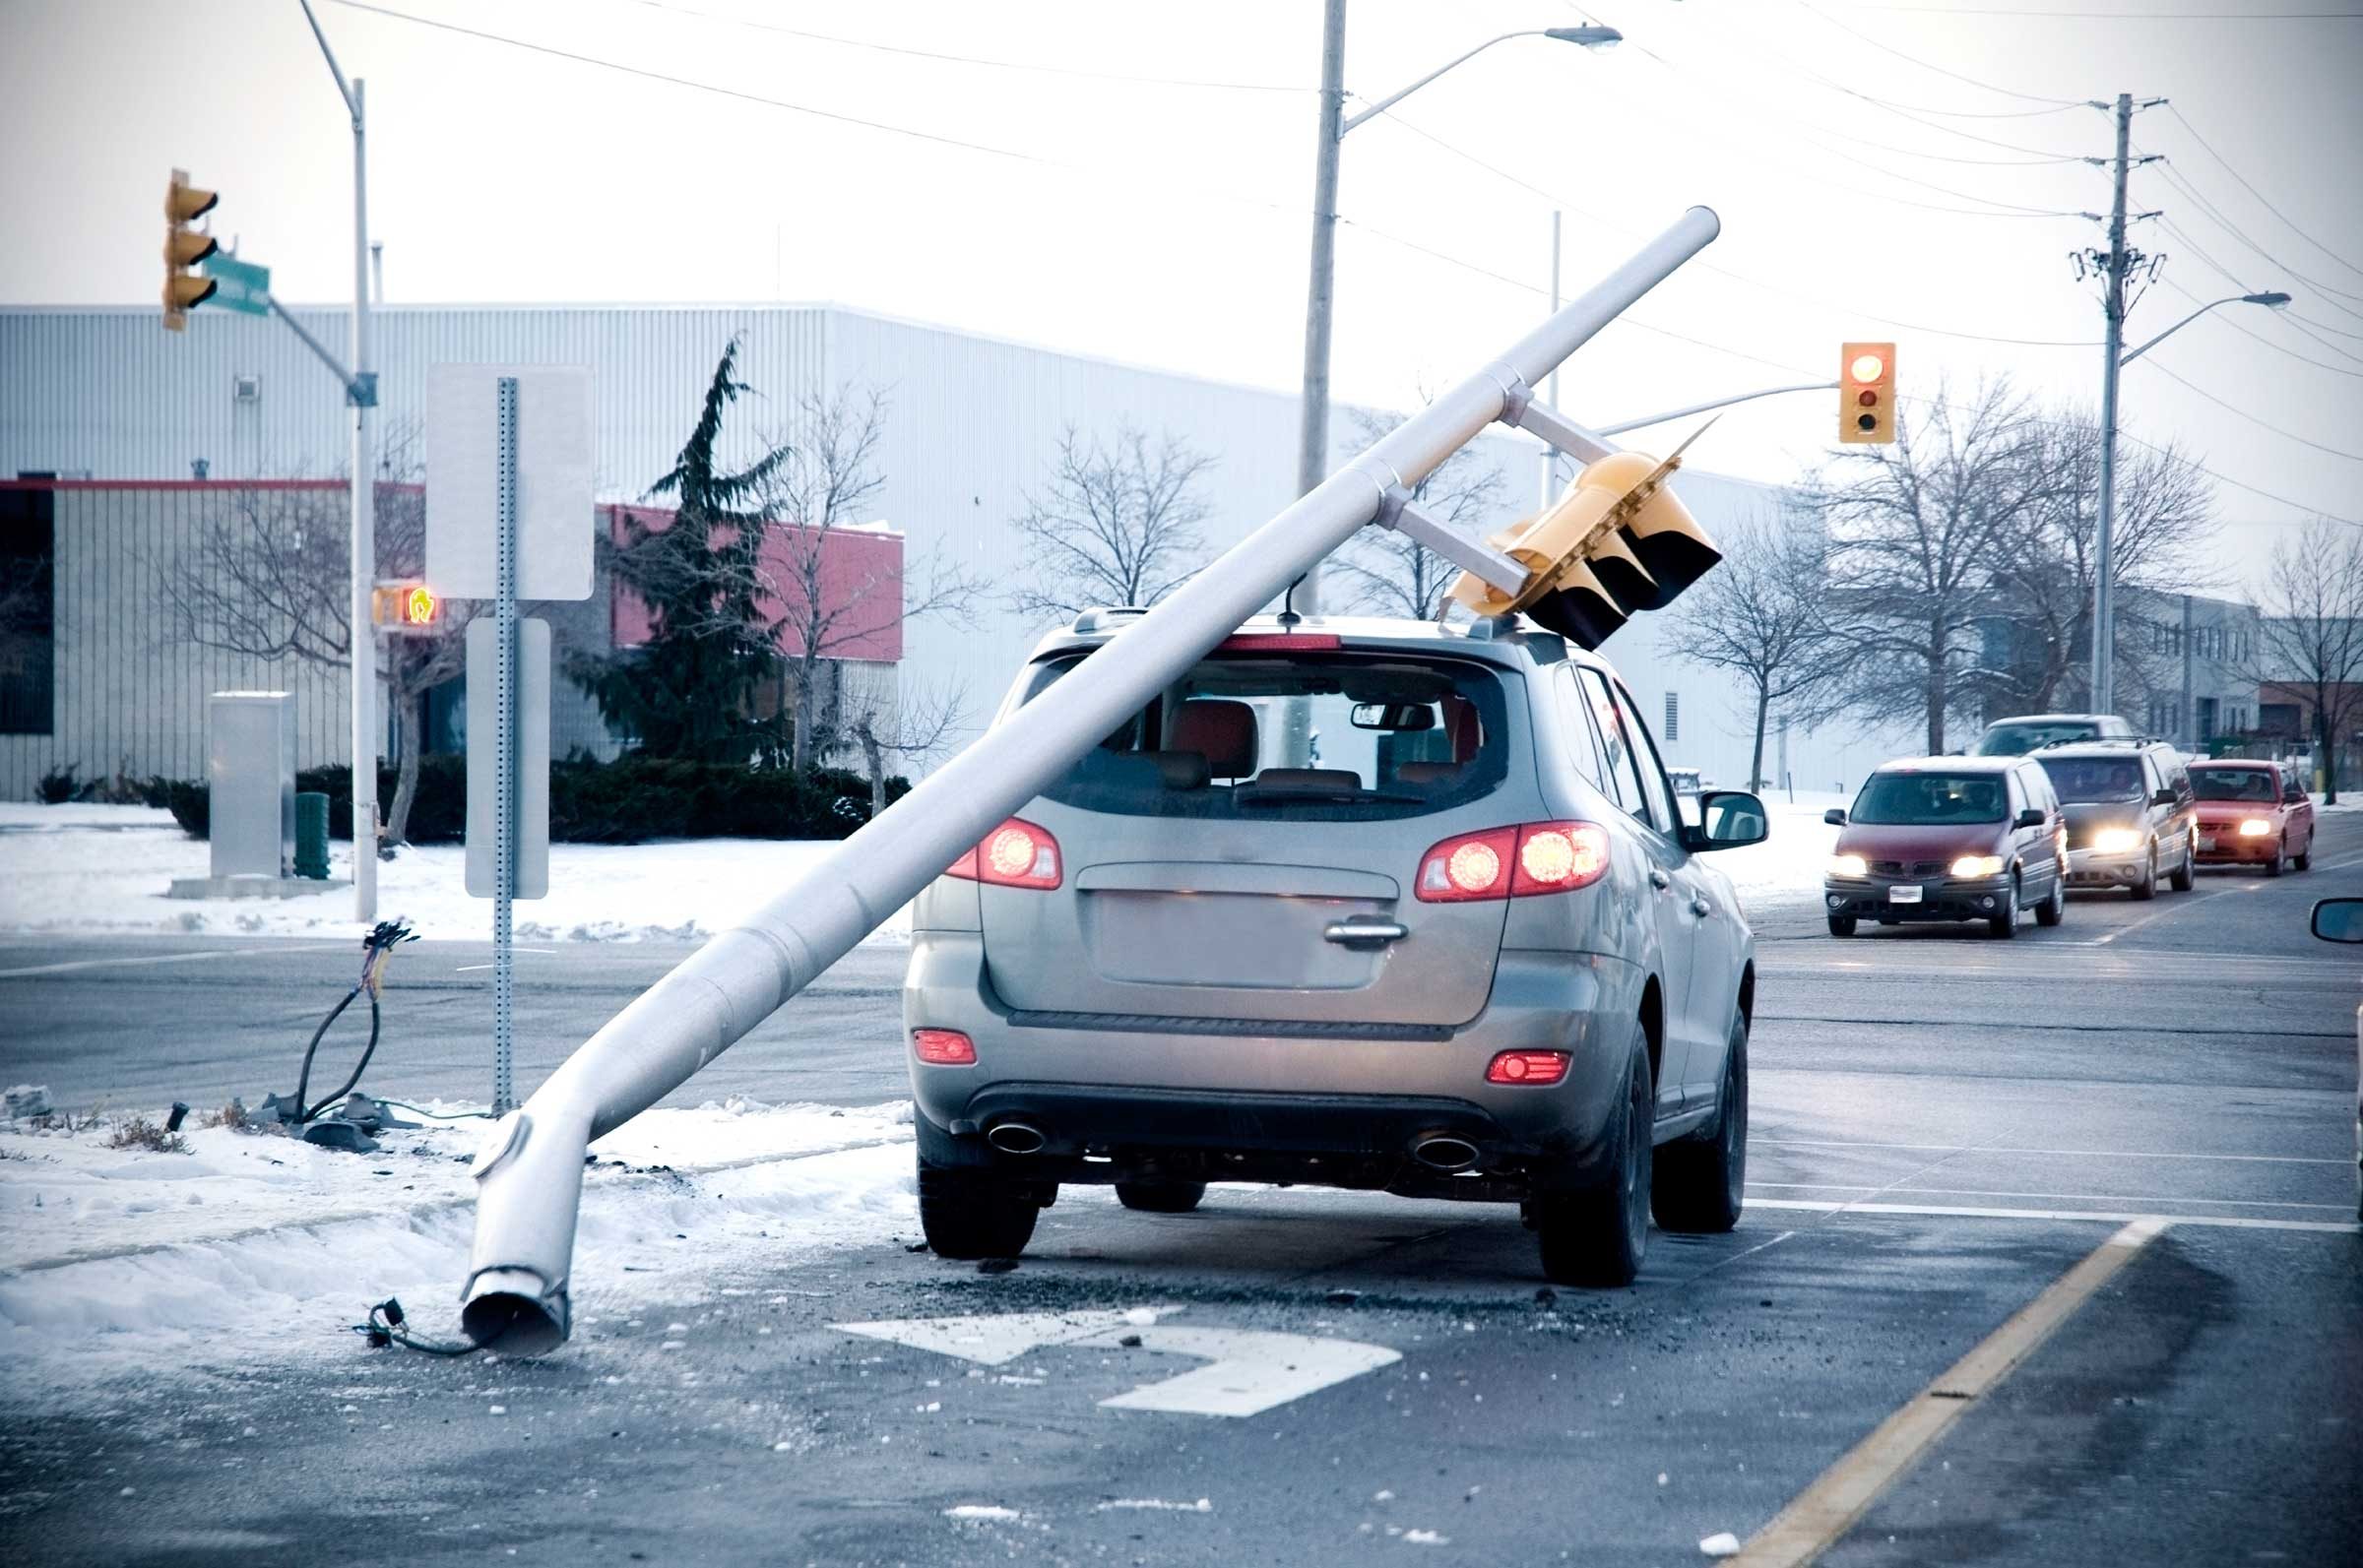 Reclamaciones de seguros de automóviles:15 de las excusas más extrañas jamás presentadas 